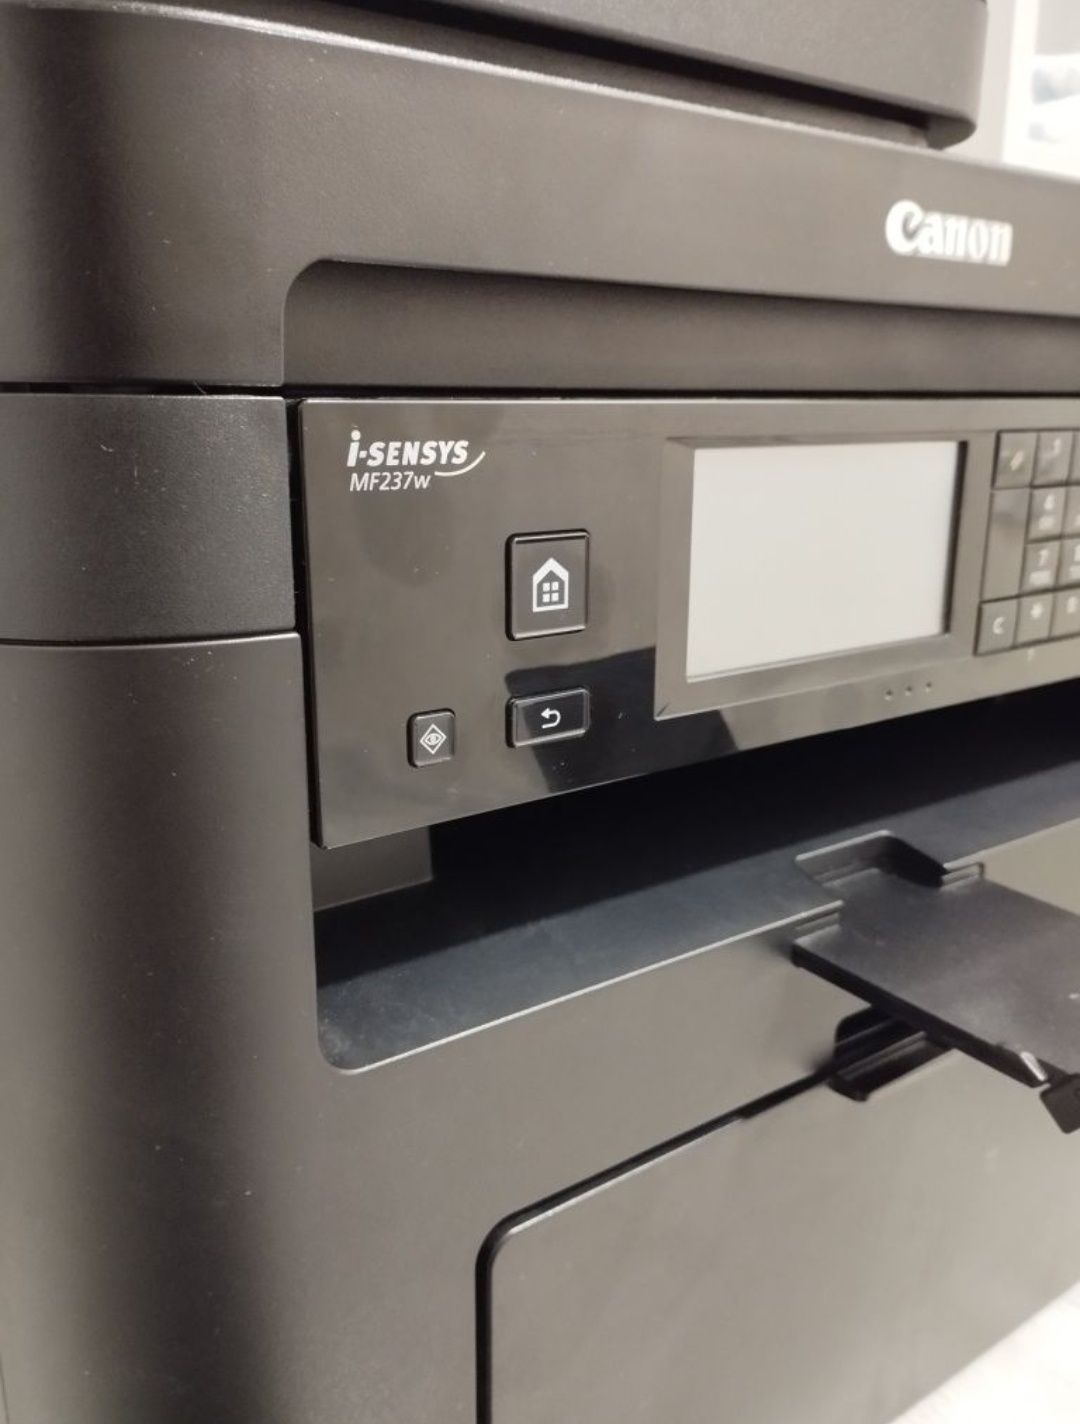 Printer CANON MF237 w